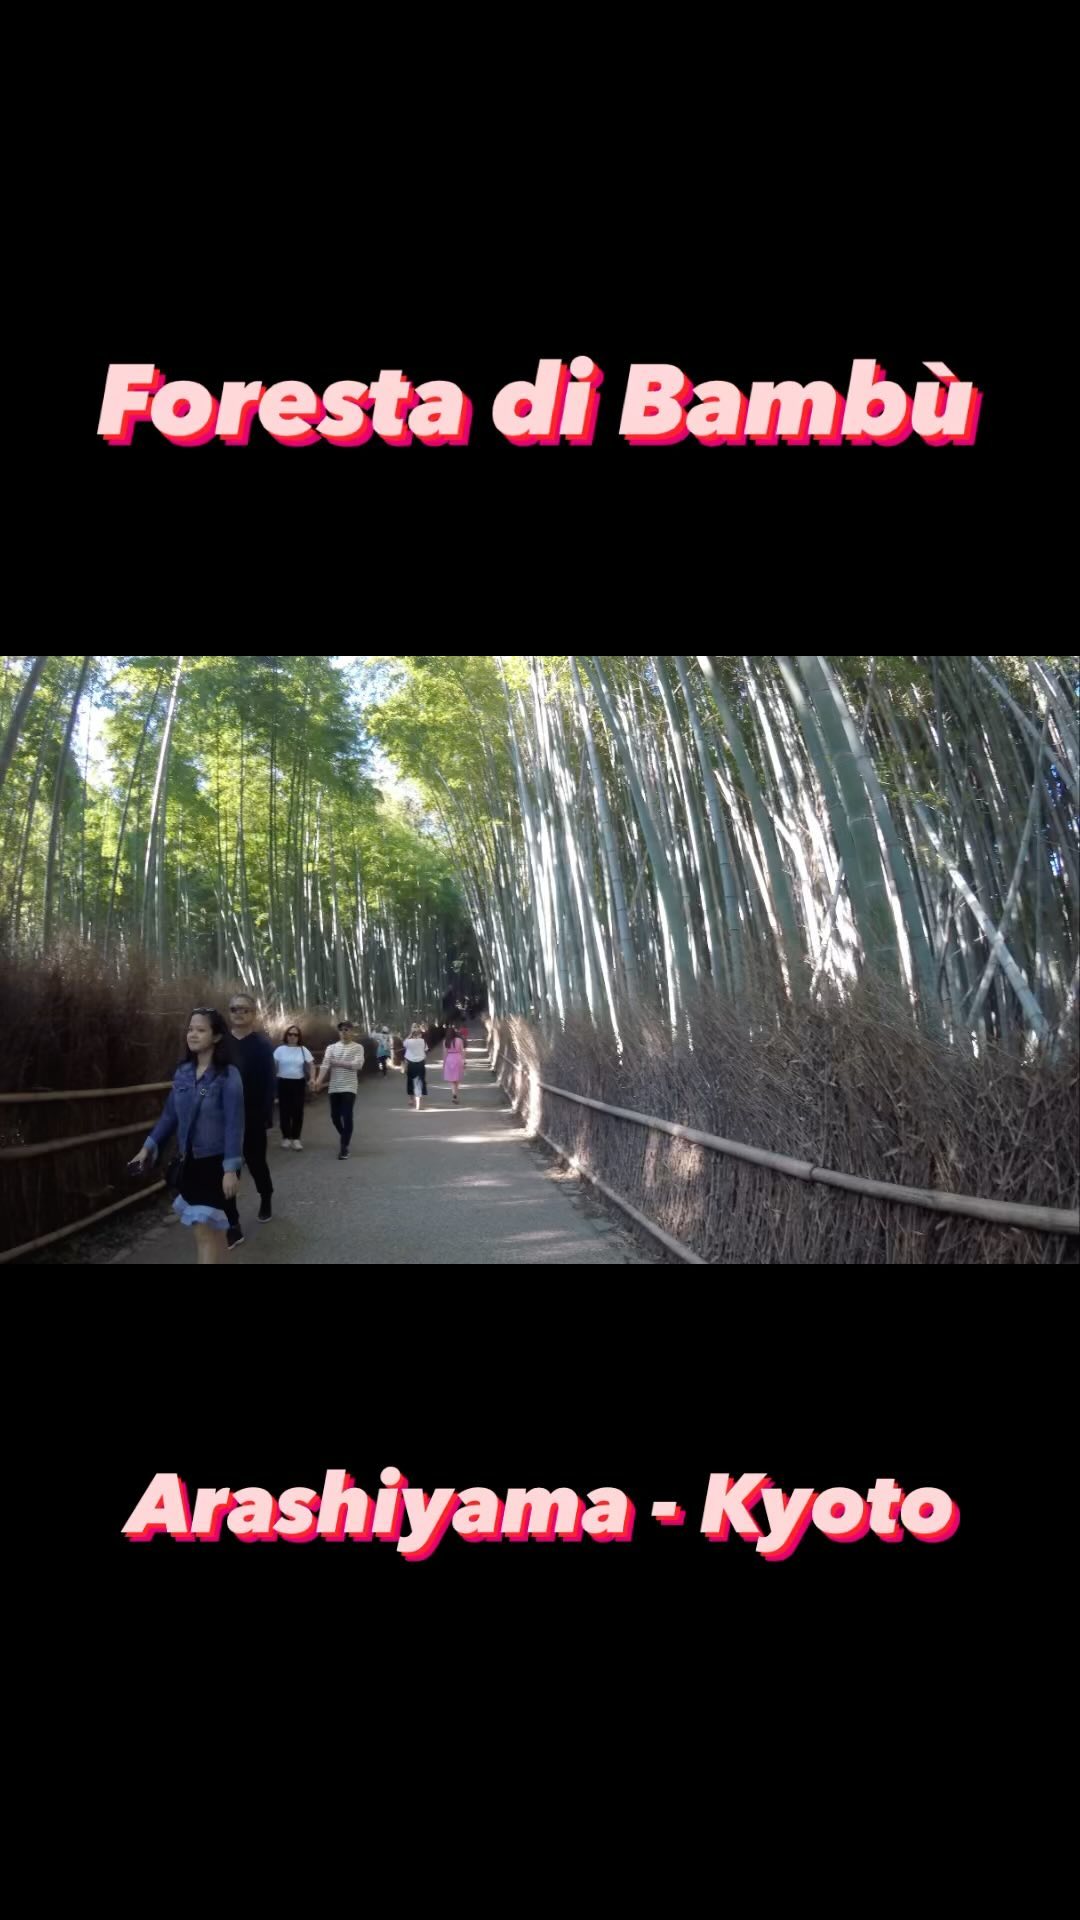 La foresta di bambù di Arashiyama, o Bamboo Grove, è famosa a livello locale e rinomata in tutto il mondo. I visitatori possono passeggiare su sentieri fiancheggiati da infinite file di imponenti bambù. L’esperienza è stata descritta come ultraterrena, serena e onirica…

#arashiyama #bambooforest #kyoto #japan #giappone #forestadibambù #giappone #jntoitalia #traveljapan #travel #travelblogger #travelreels #travelling #travelgram #viaggiare #viaggio #reels #iriseperiplotravel #wanderlust